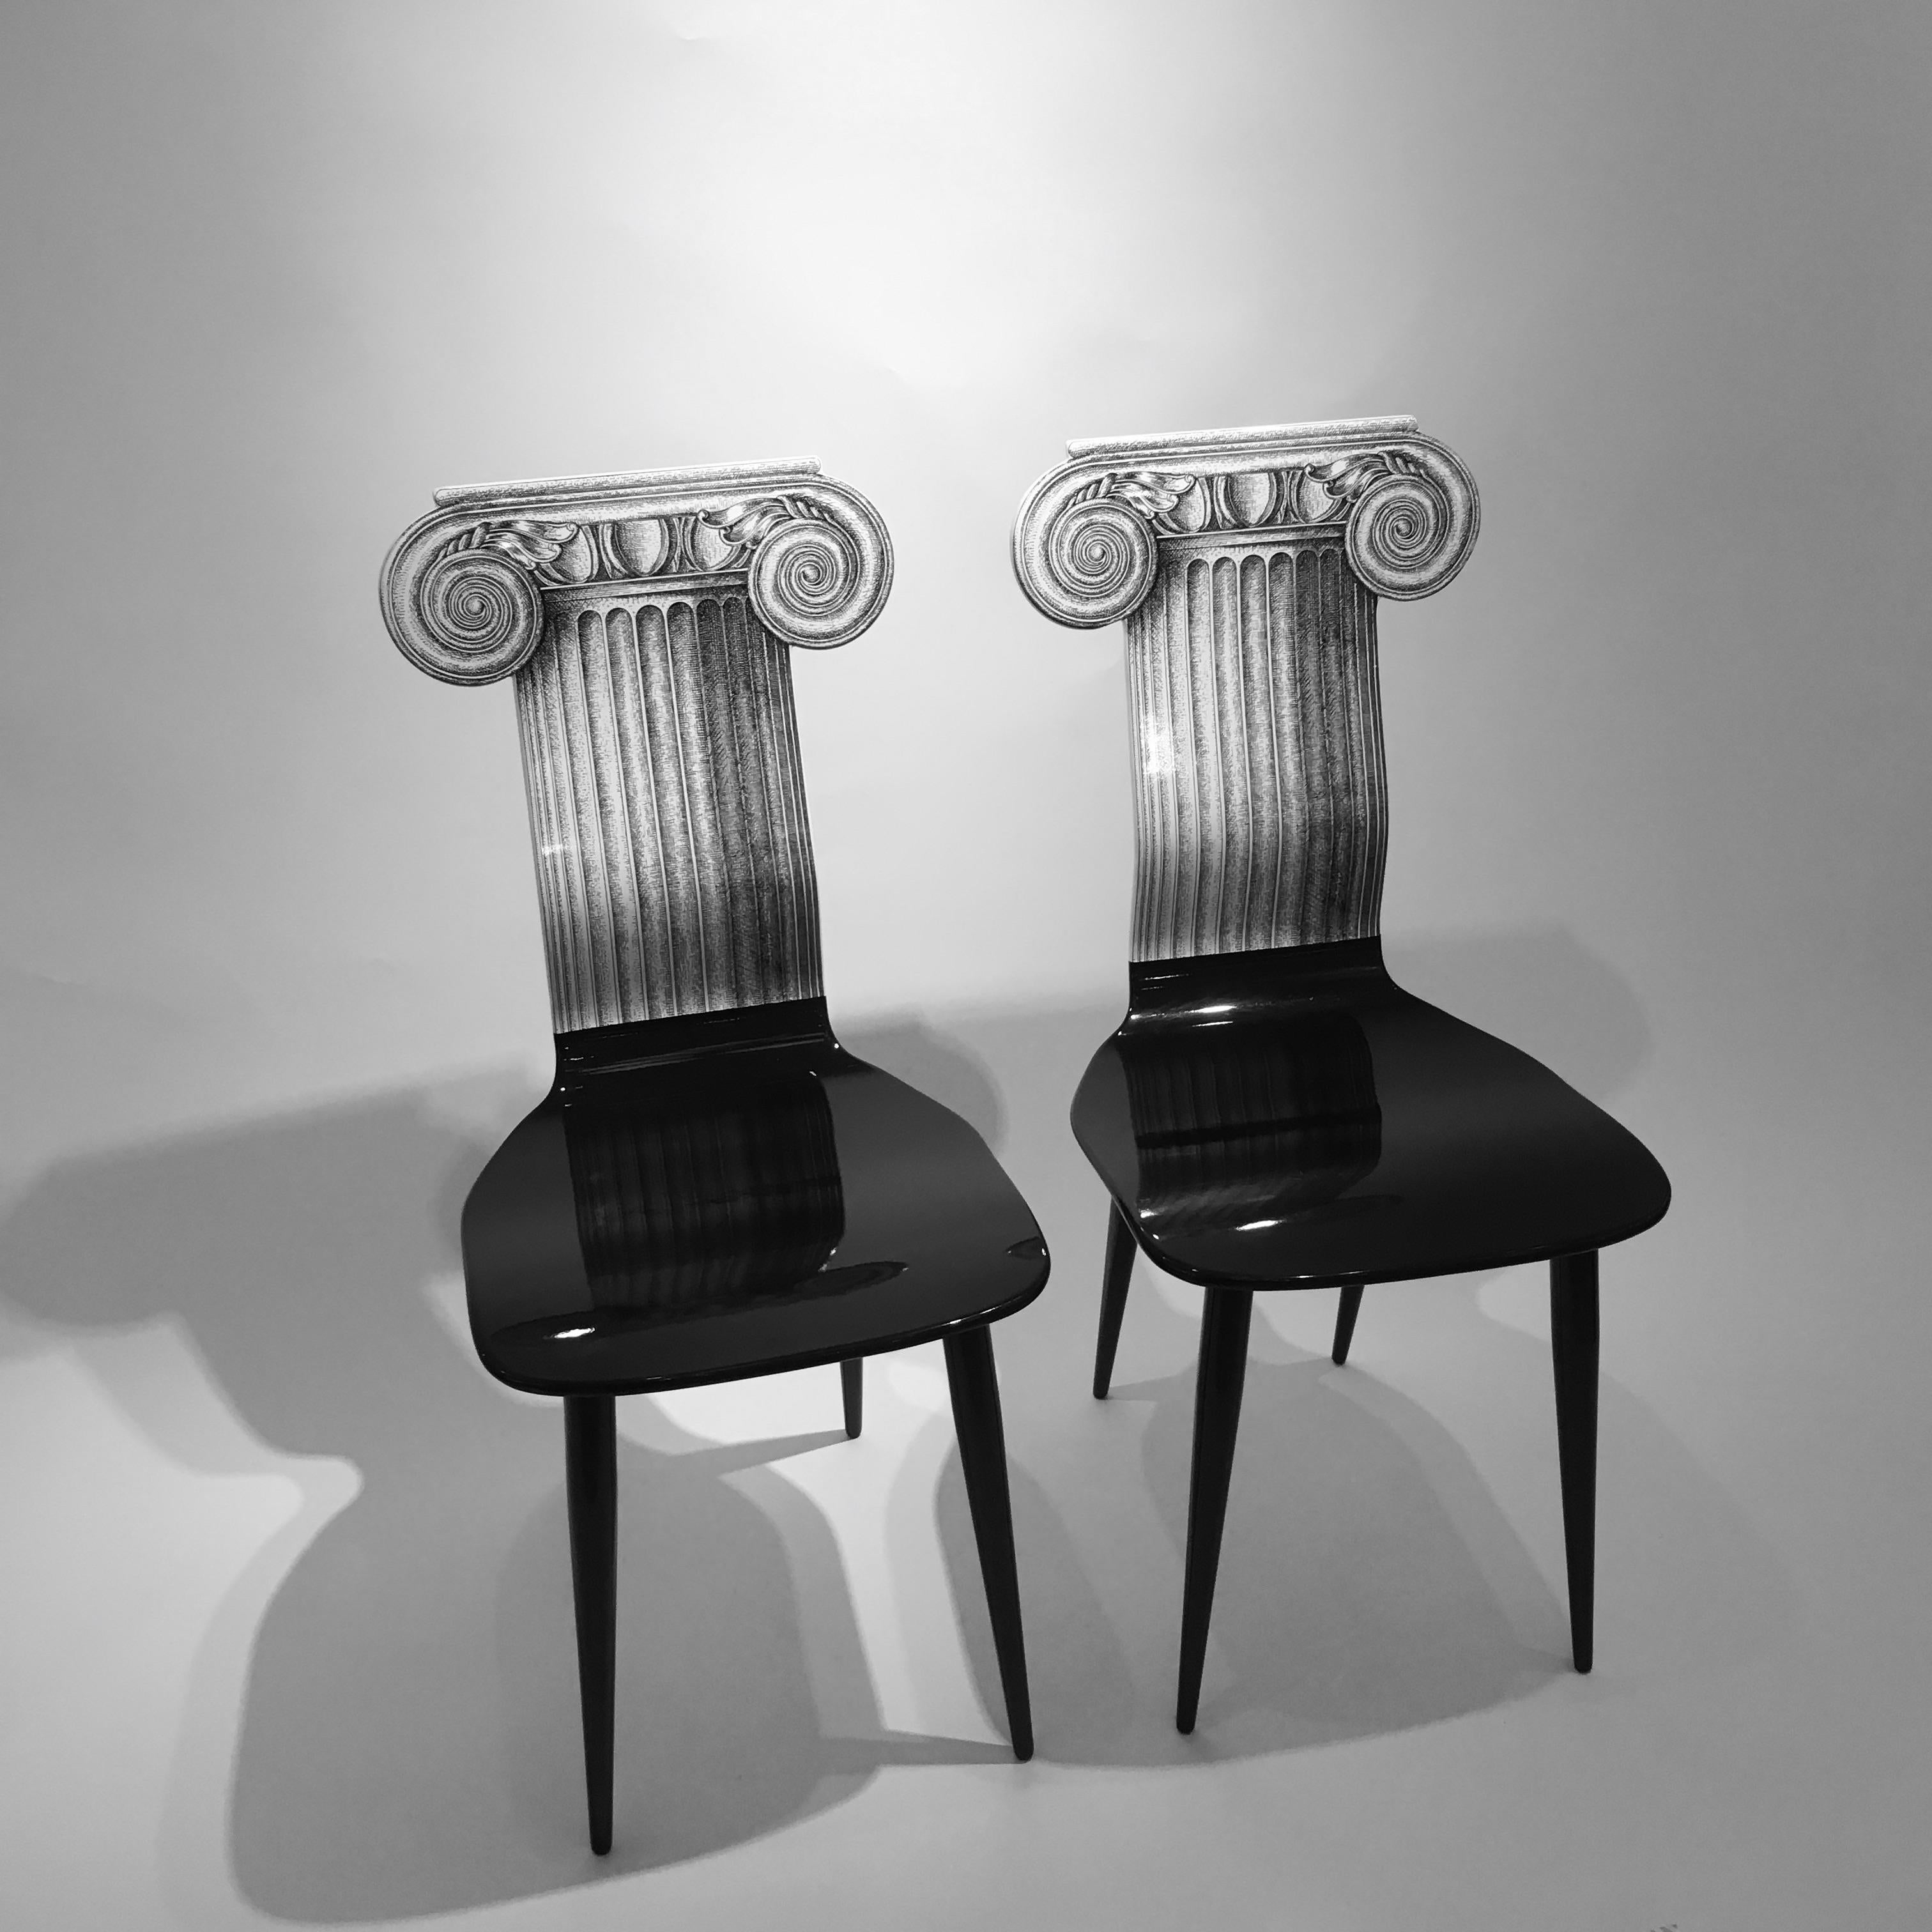 Wood Piero Fornasetti 'Capitello Ionico' Chair in Black and White, Italy, circa 2006 For Sale